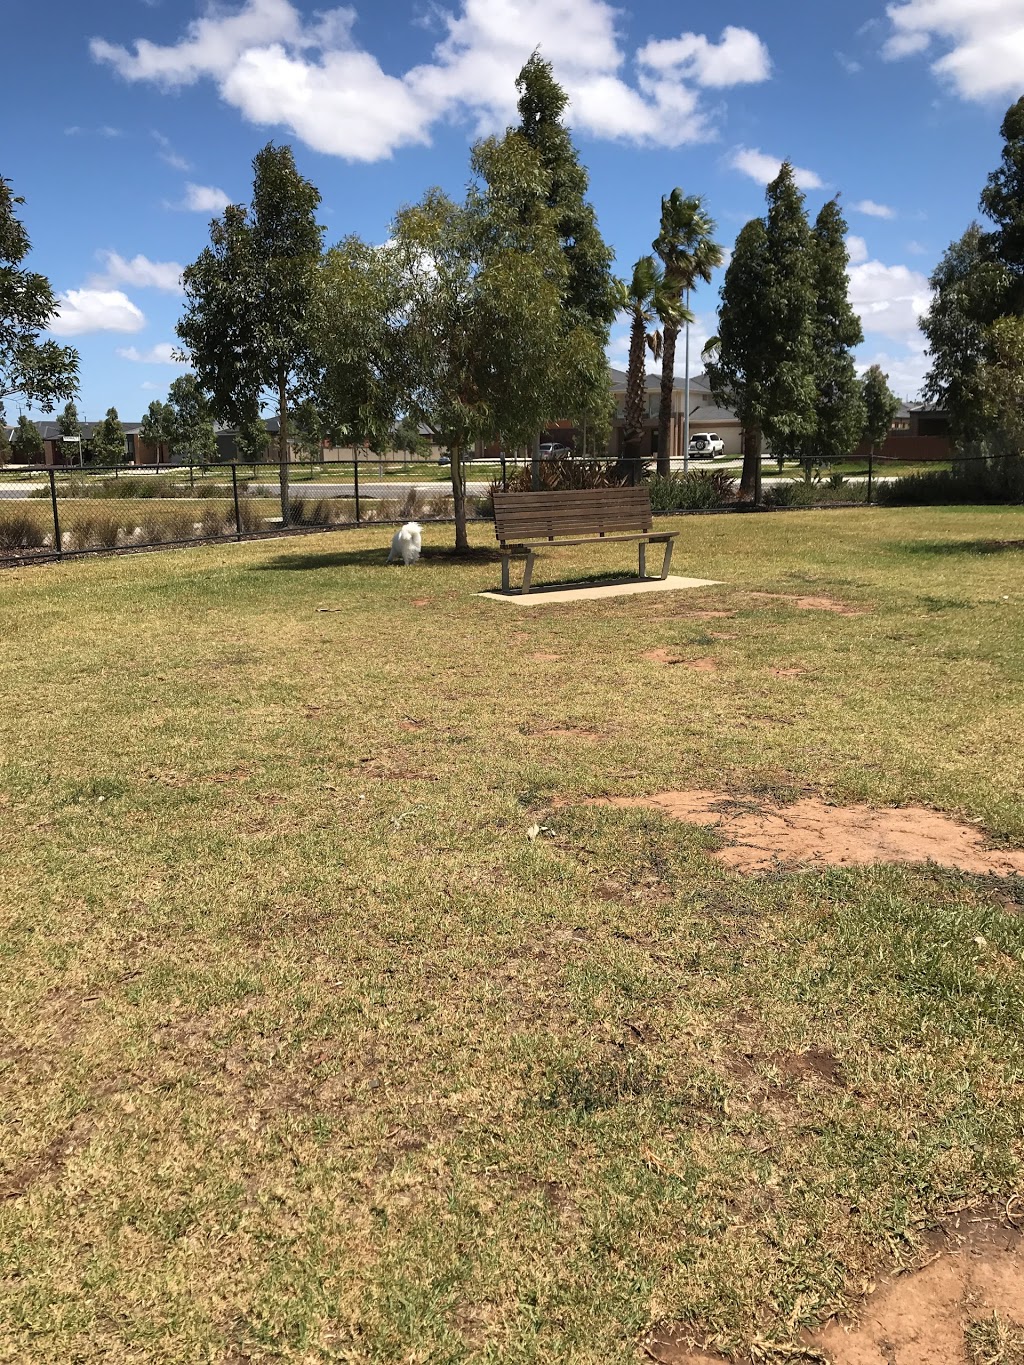 Off leash dog fenced area | park | Perennial Dr, Truganina VIC 3029, Australia